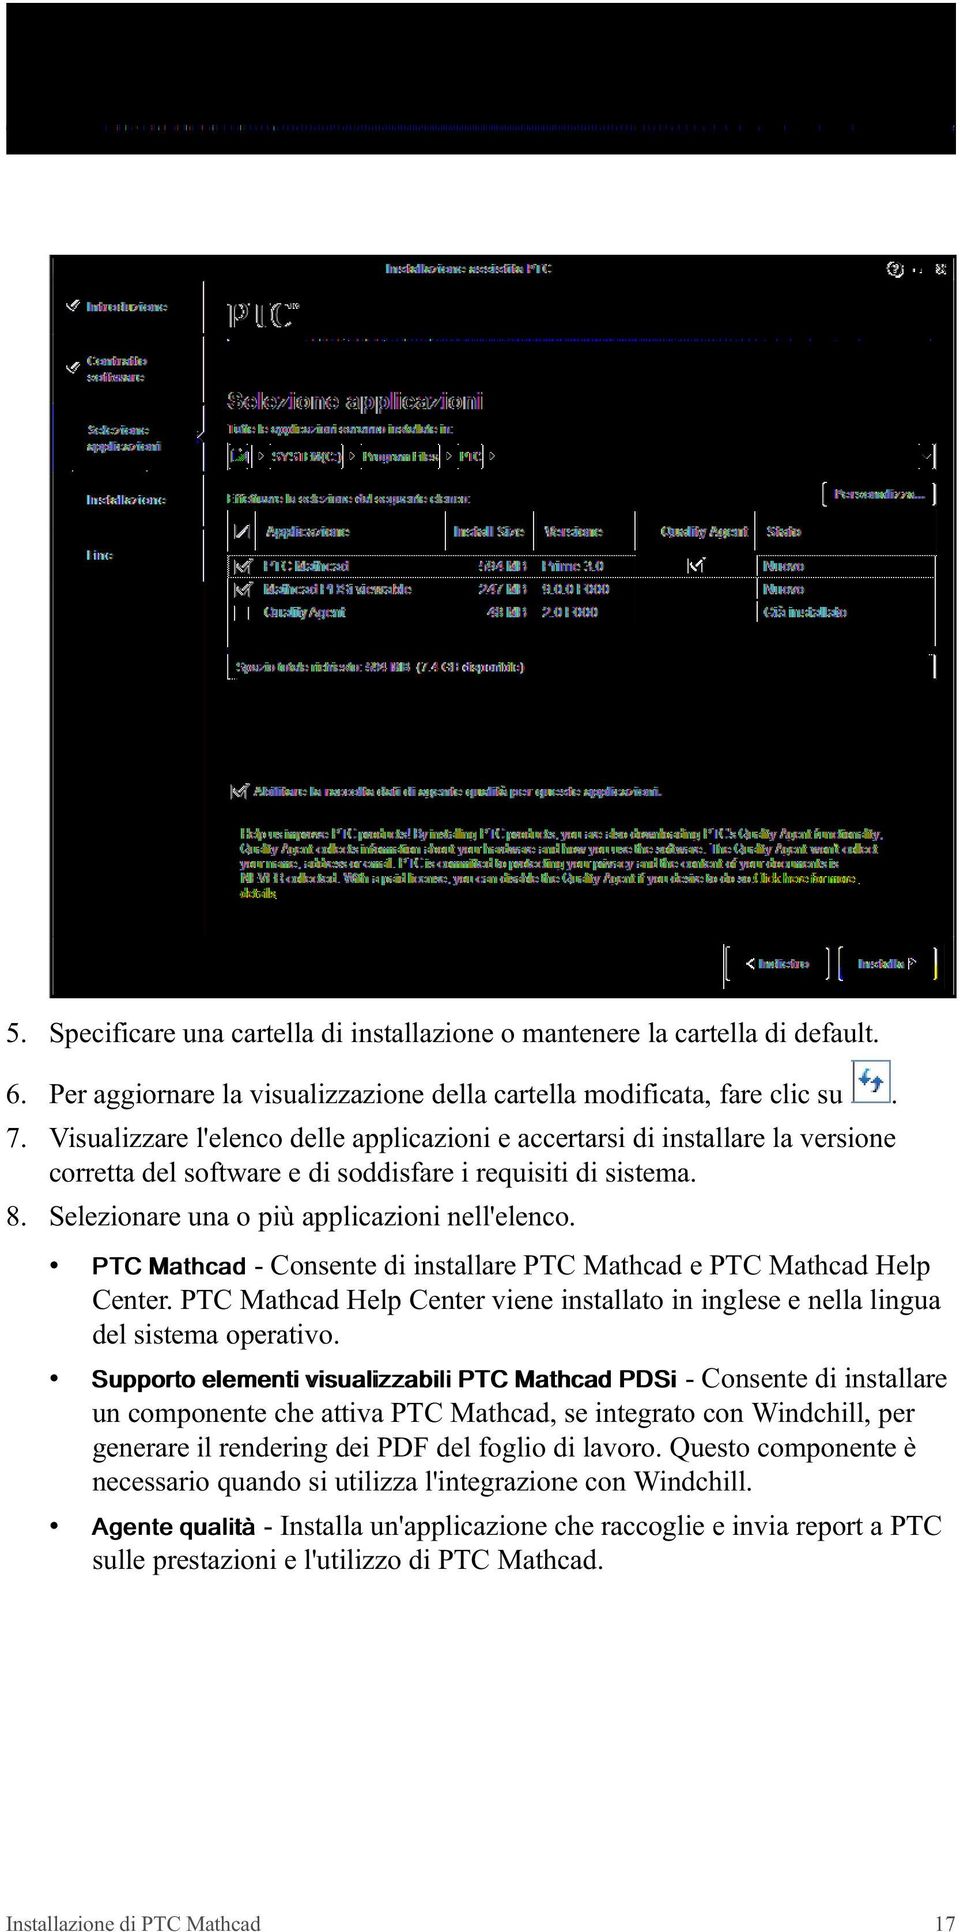 PTC Mathcad - Consente di installare PTC Mathcad e PTC Mathcad Help Center. PTC Mathcad Help Center viene installato in inglese e nella lingua del sistema operativo.